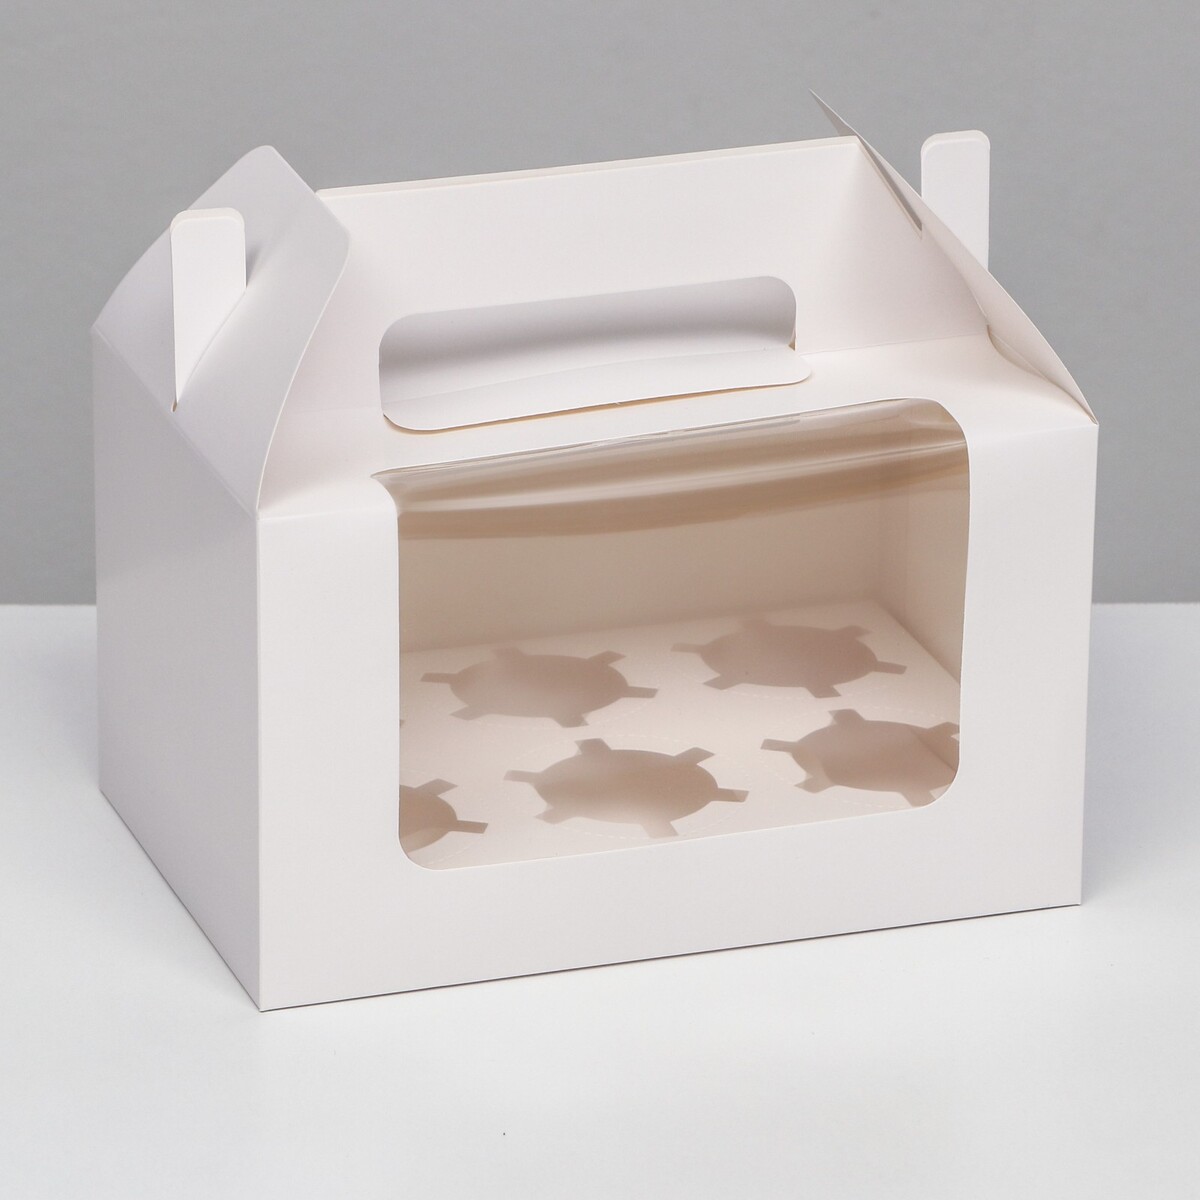 Кондитерская складная коробка для 6 капкейков, белая 23,5 х 16 х 14 см кондитерская складная коробка для 4 капкейков 16 х 16 х 10 розовая